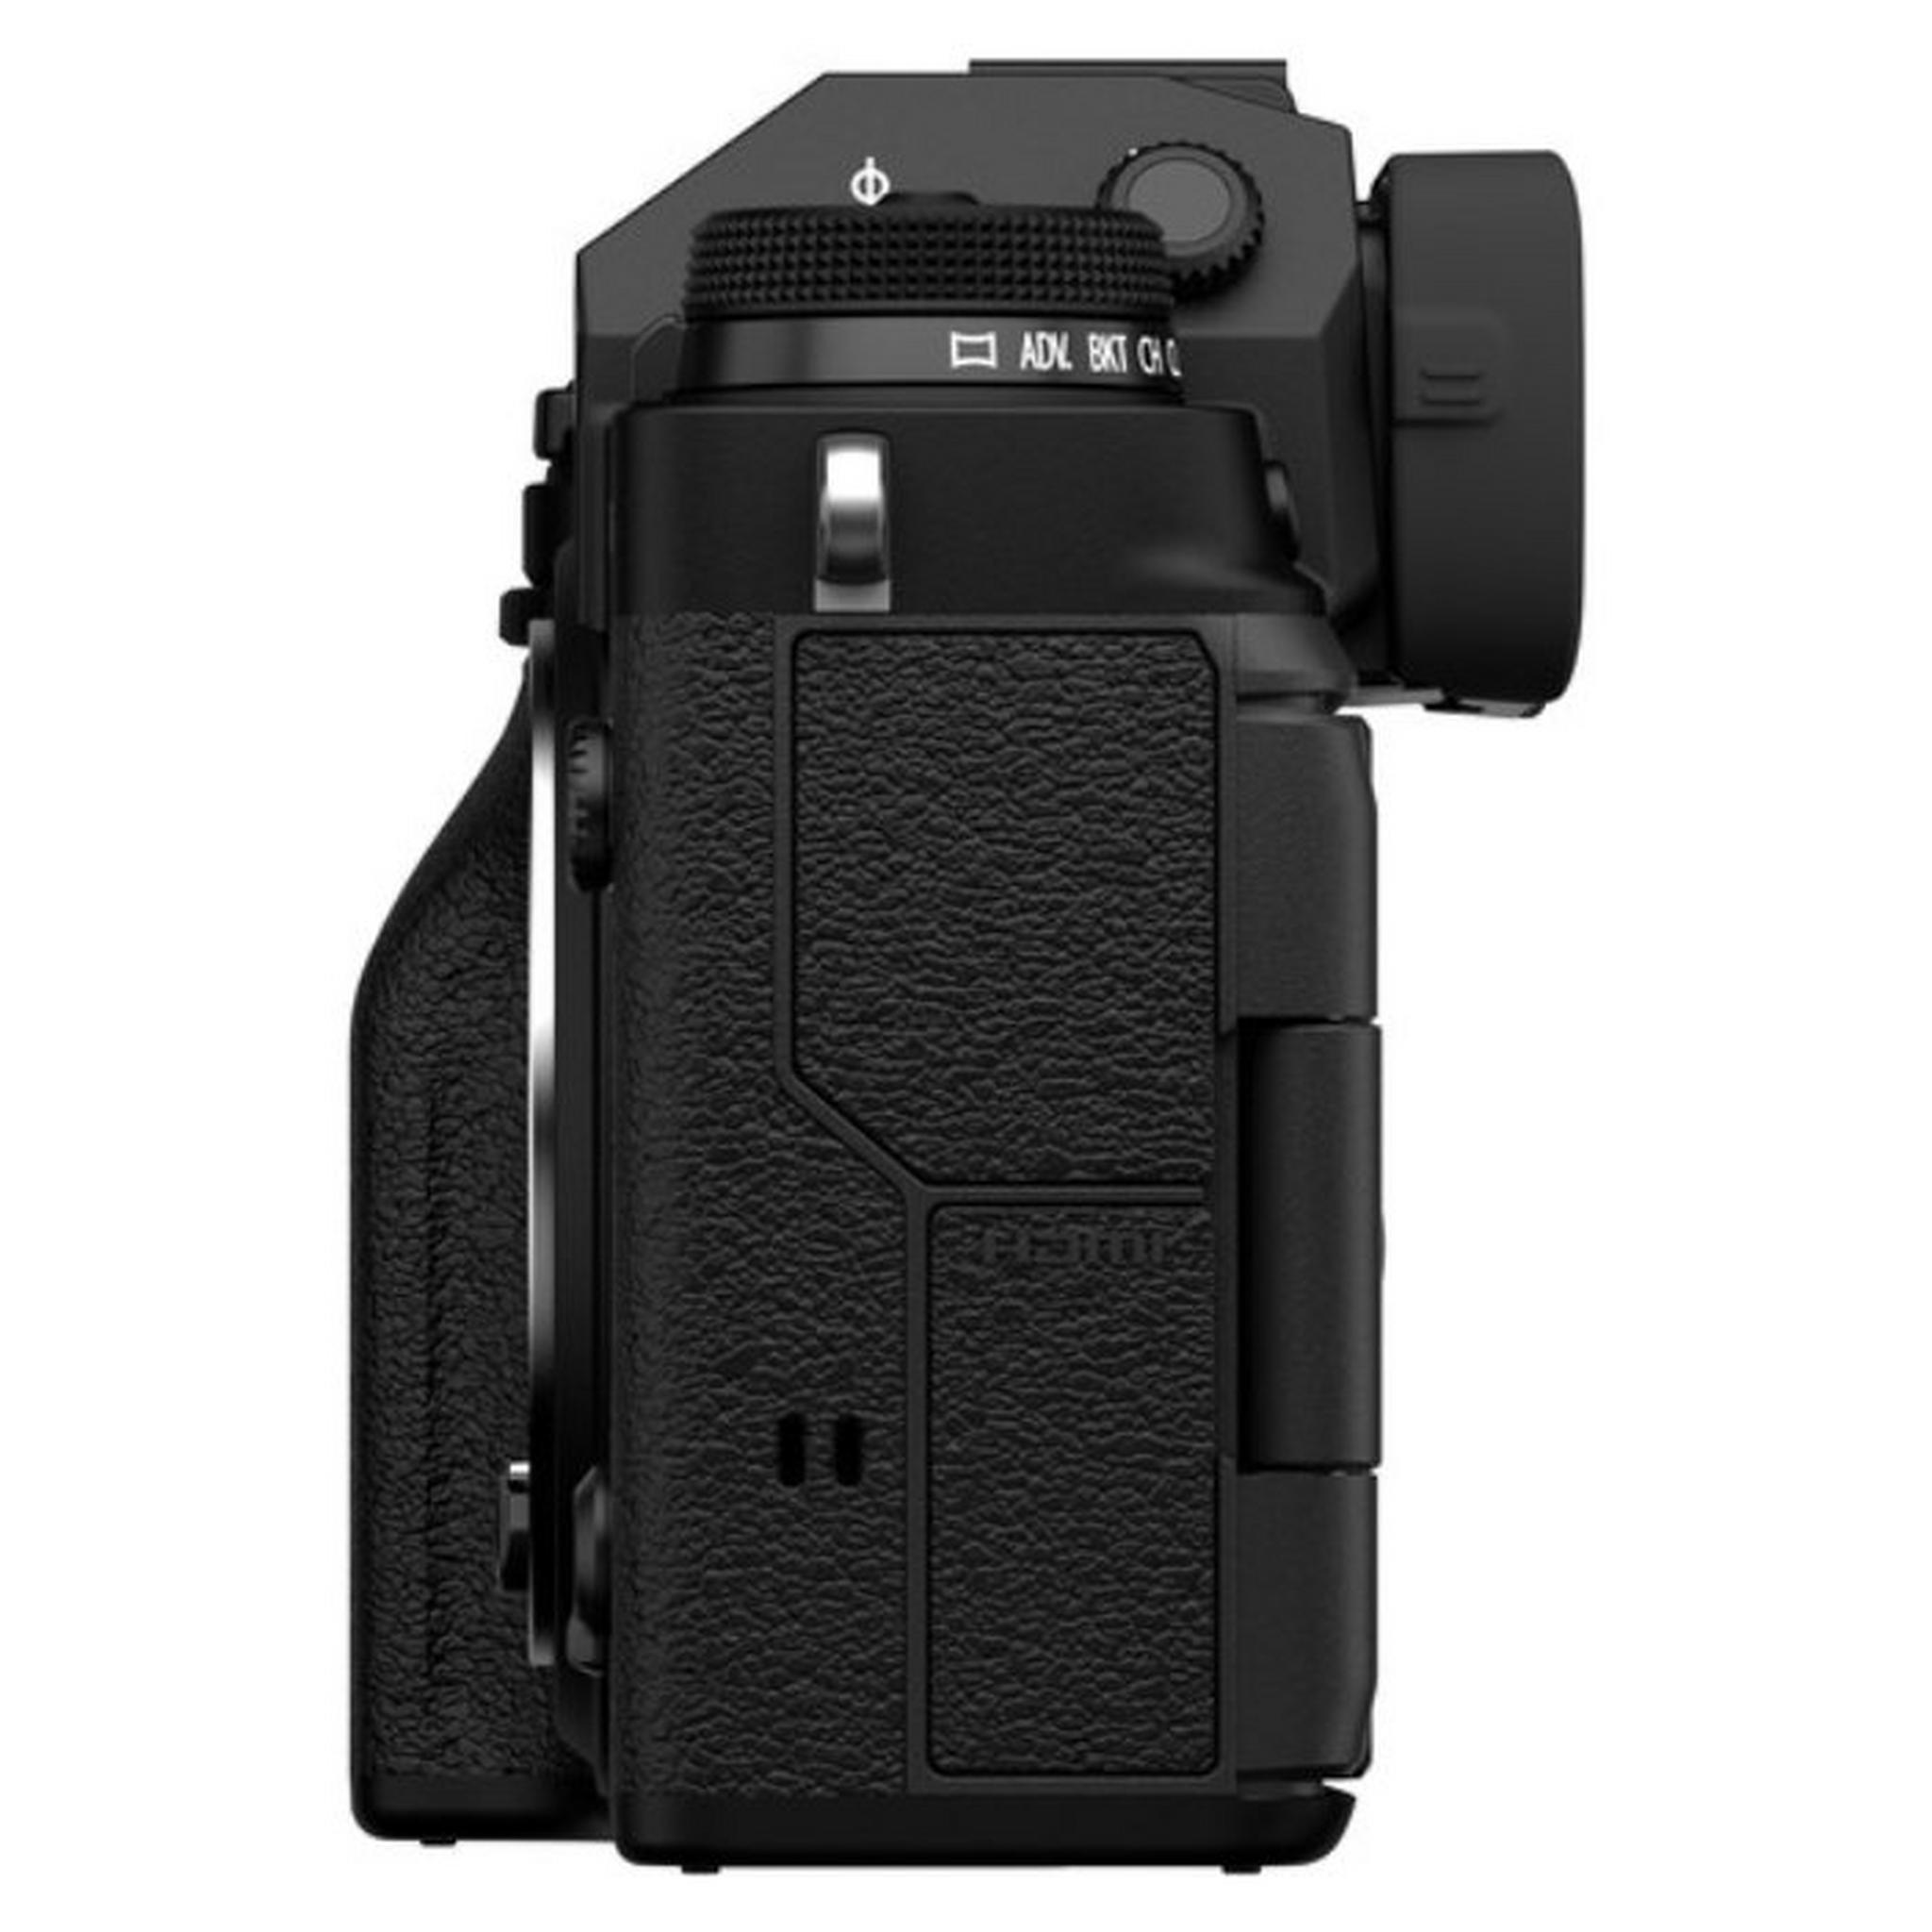 كاميرا فوجي فيلم X-T4 ديجيتال بدون مرآة مع عدسة 18-55 ملم - أسود